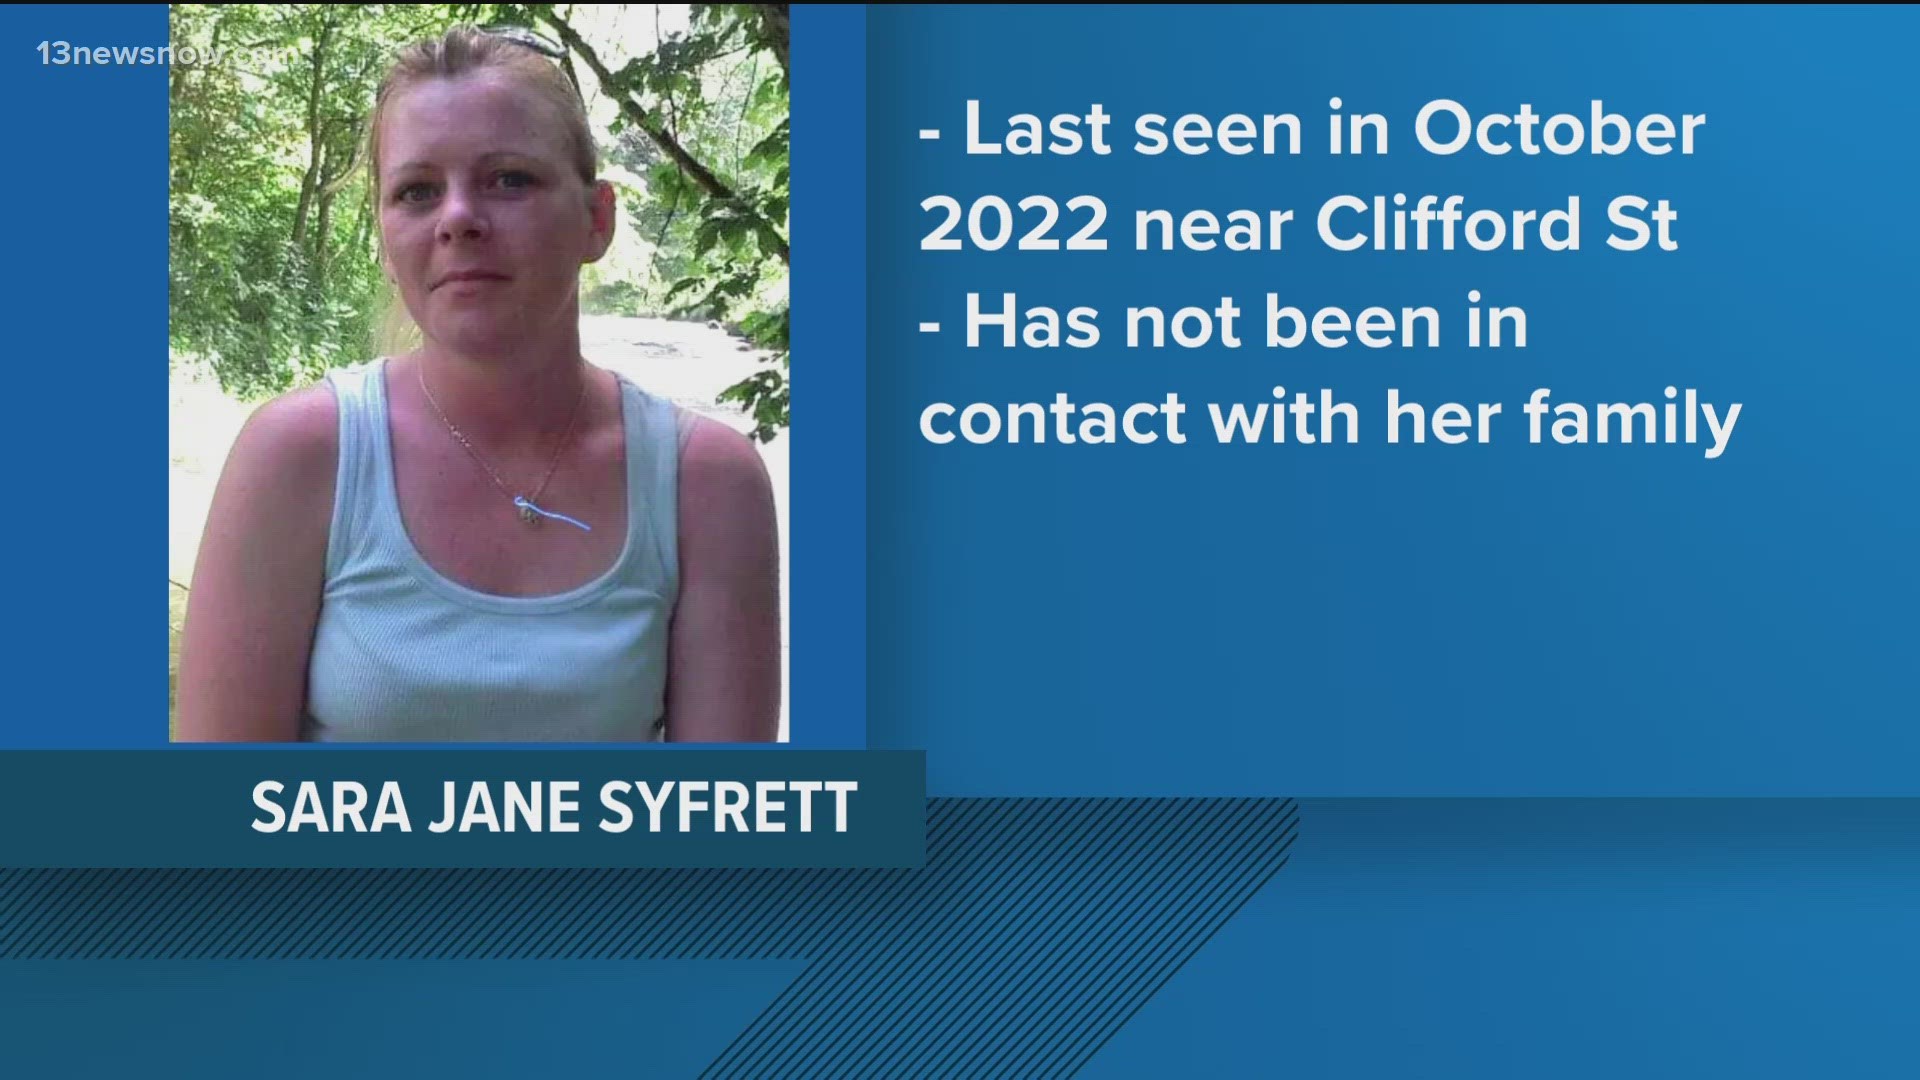 Sara Jane Syfrett was last seen in October 2022 on Clifford Street.